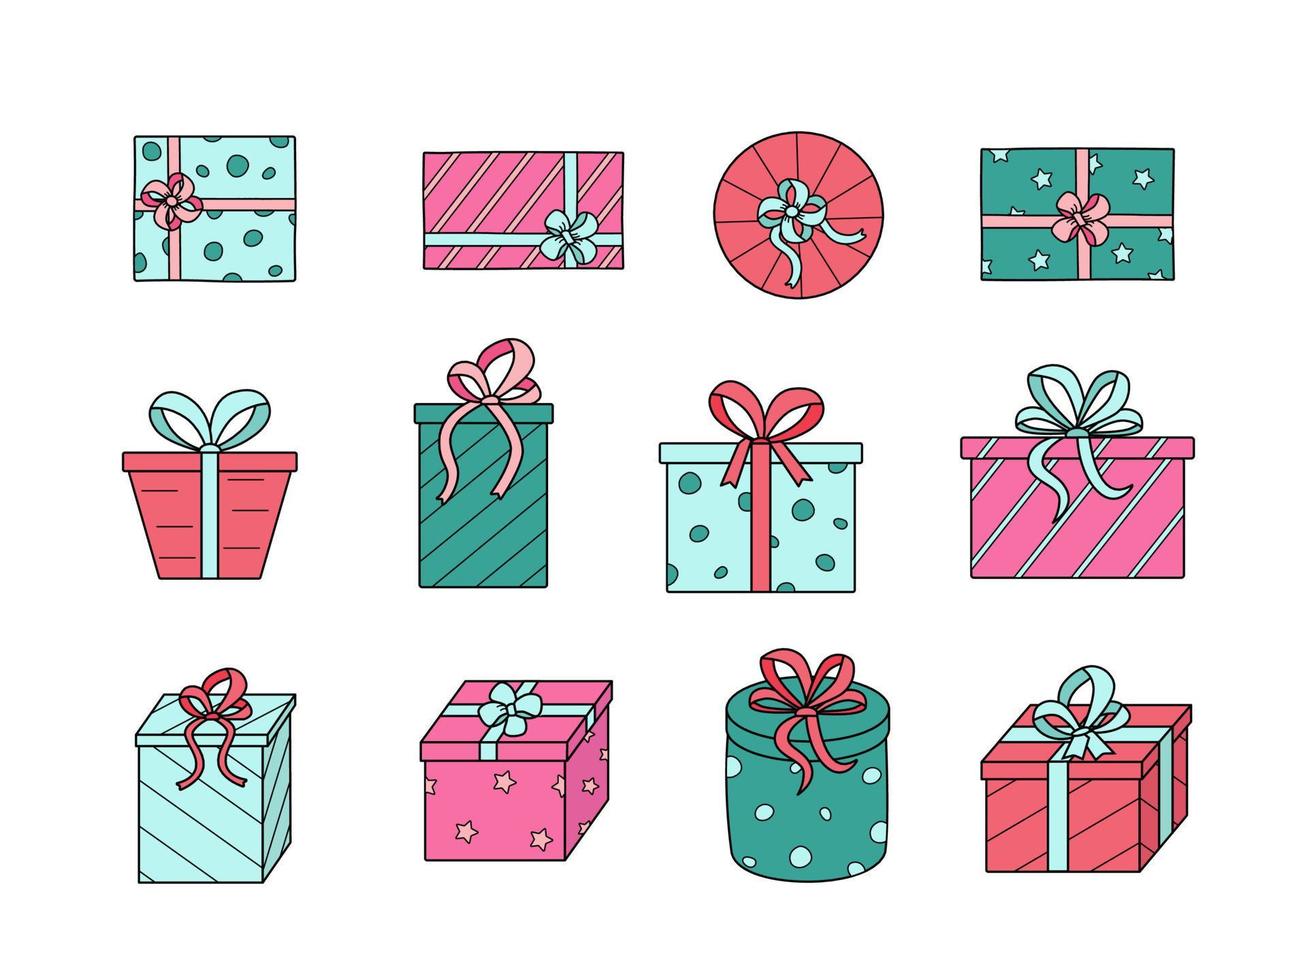 caixas de presente com arcos. ilustração em vetor de ícones coloridos de um presente festivo em um pacote. isolado no branco, um conjunto de caixas em papel de embrulho.